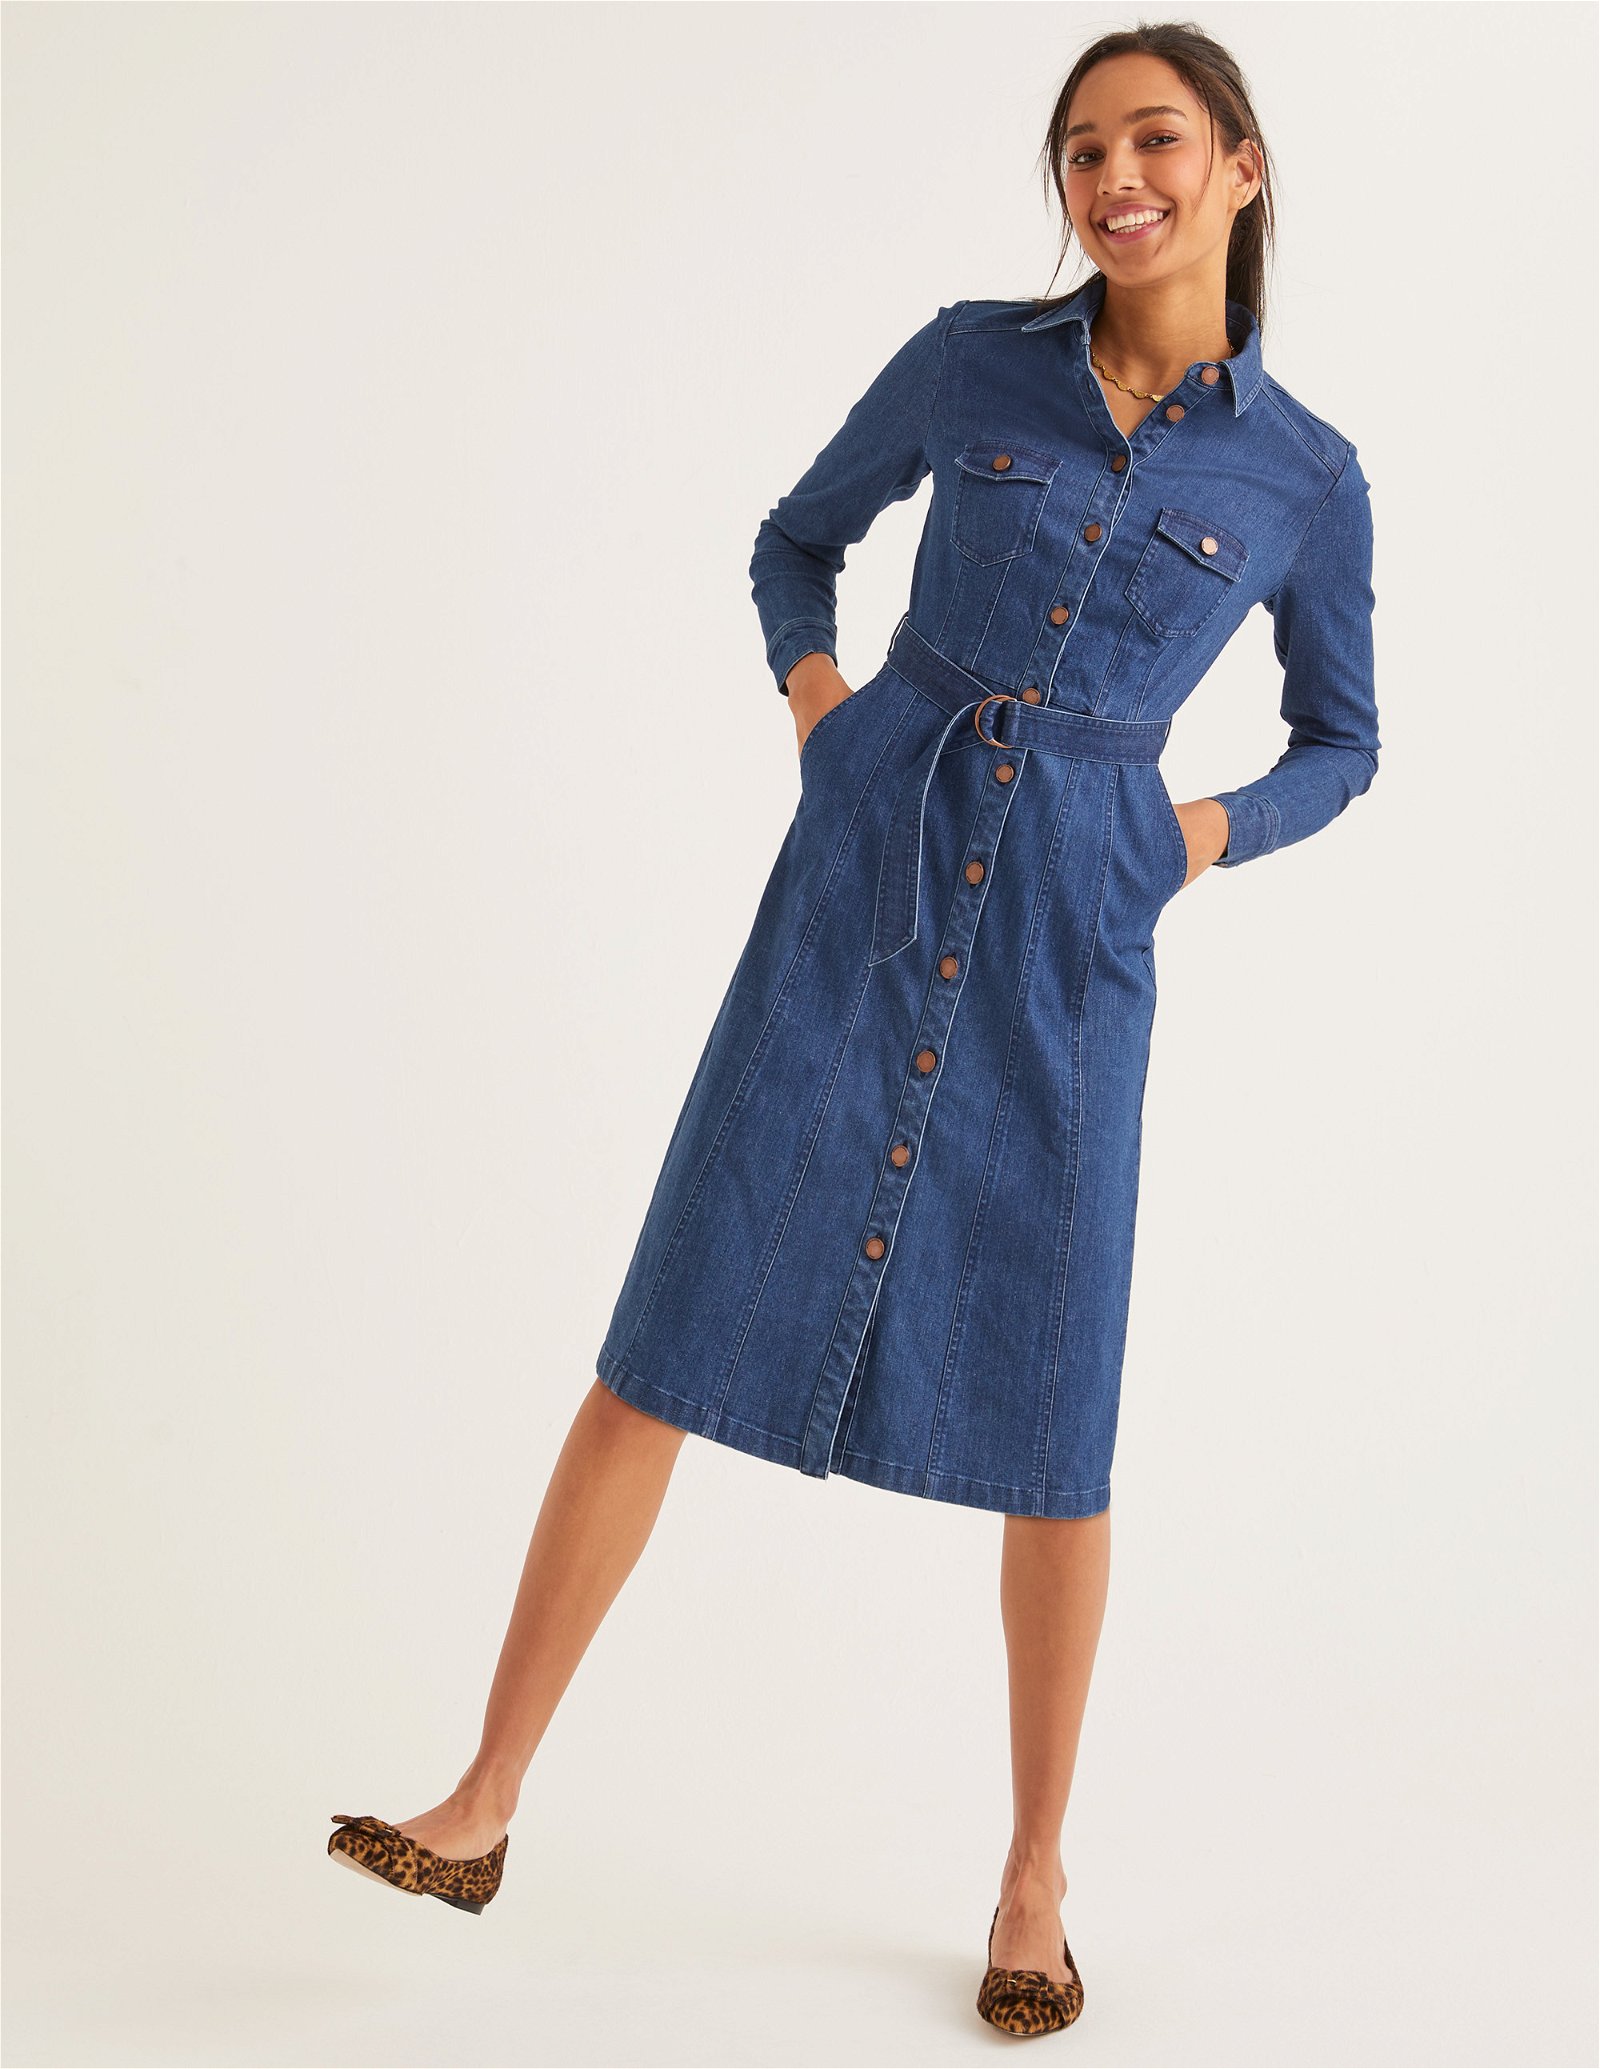 BODEN Lena Denim Shirt Dress in Mid Vintage Denim | Endource